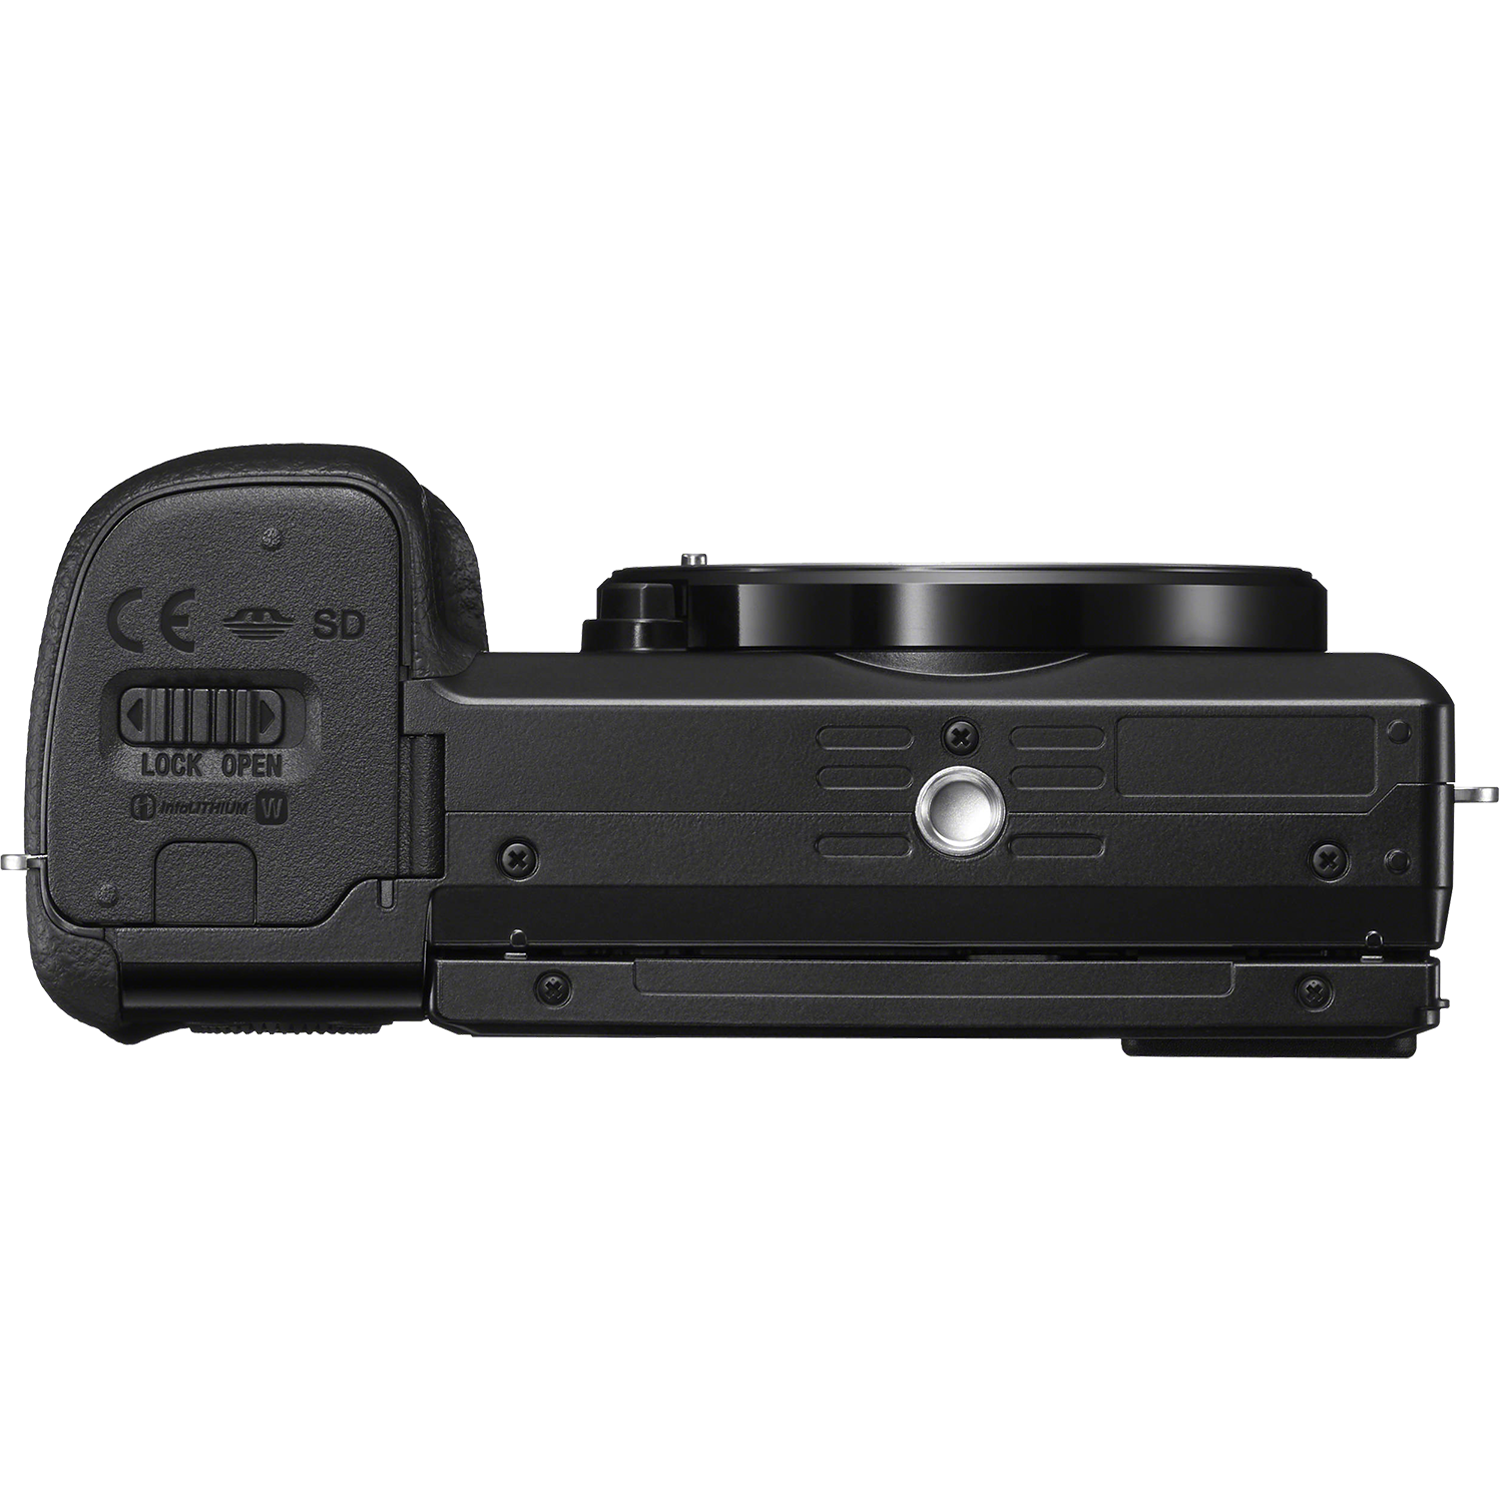 מצלמה דיגיטלית ללא מראה הכוללת עדשה Sony Alpha 6100 E PZ 16-50mm f/3.5-5.6 OSS - צבע שחור שלוש שנות אחריות ע